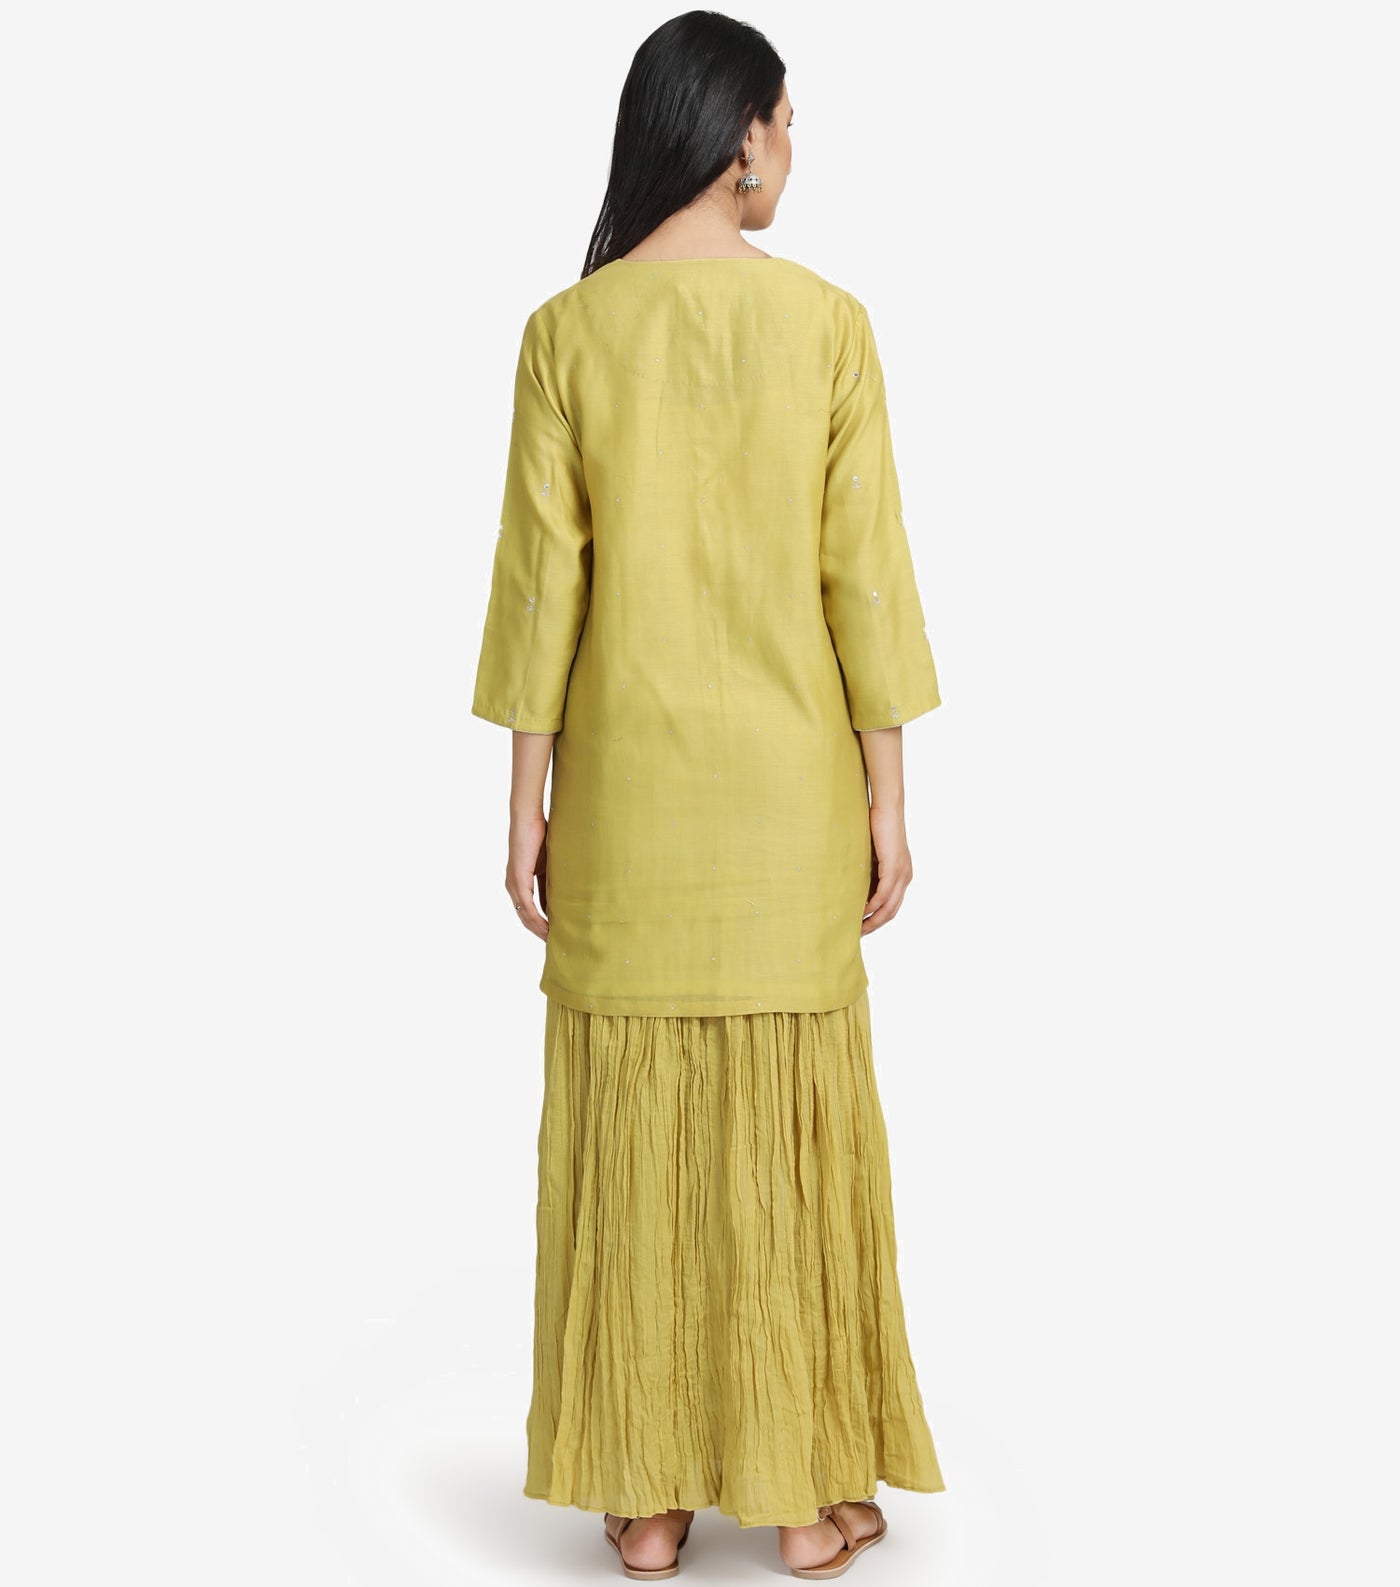 Greenish Yellow Chanderi Kurta & Skirt Set